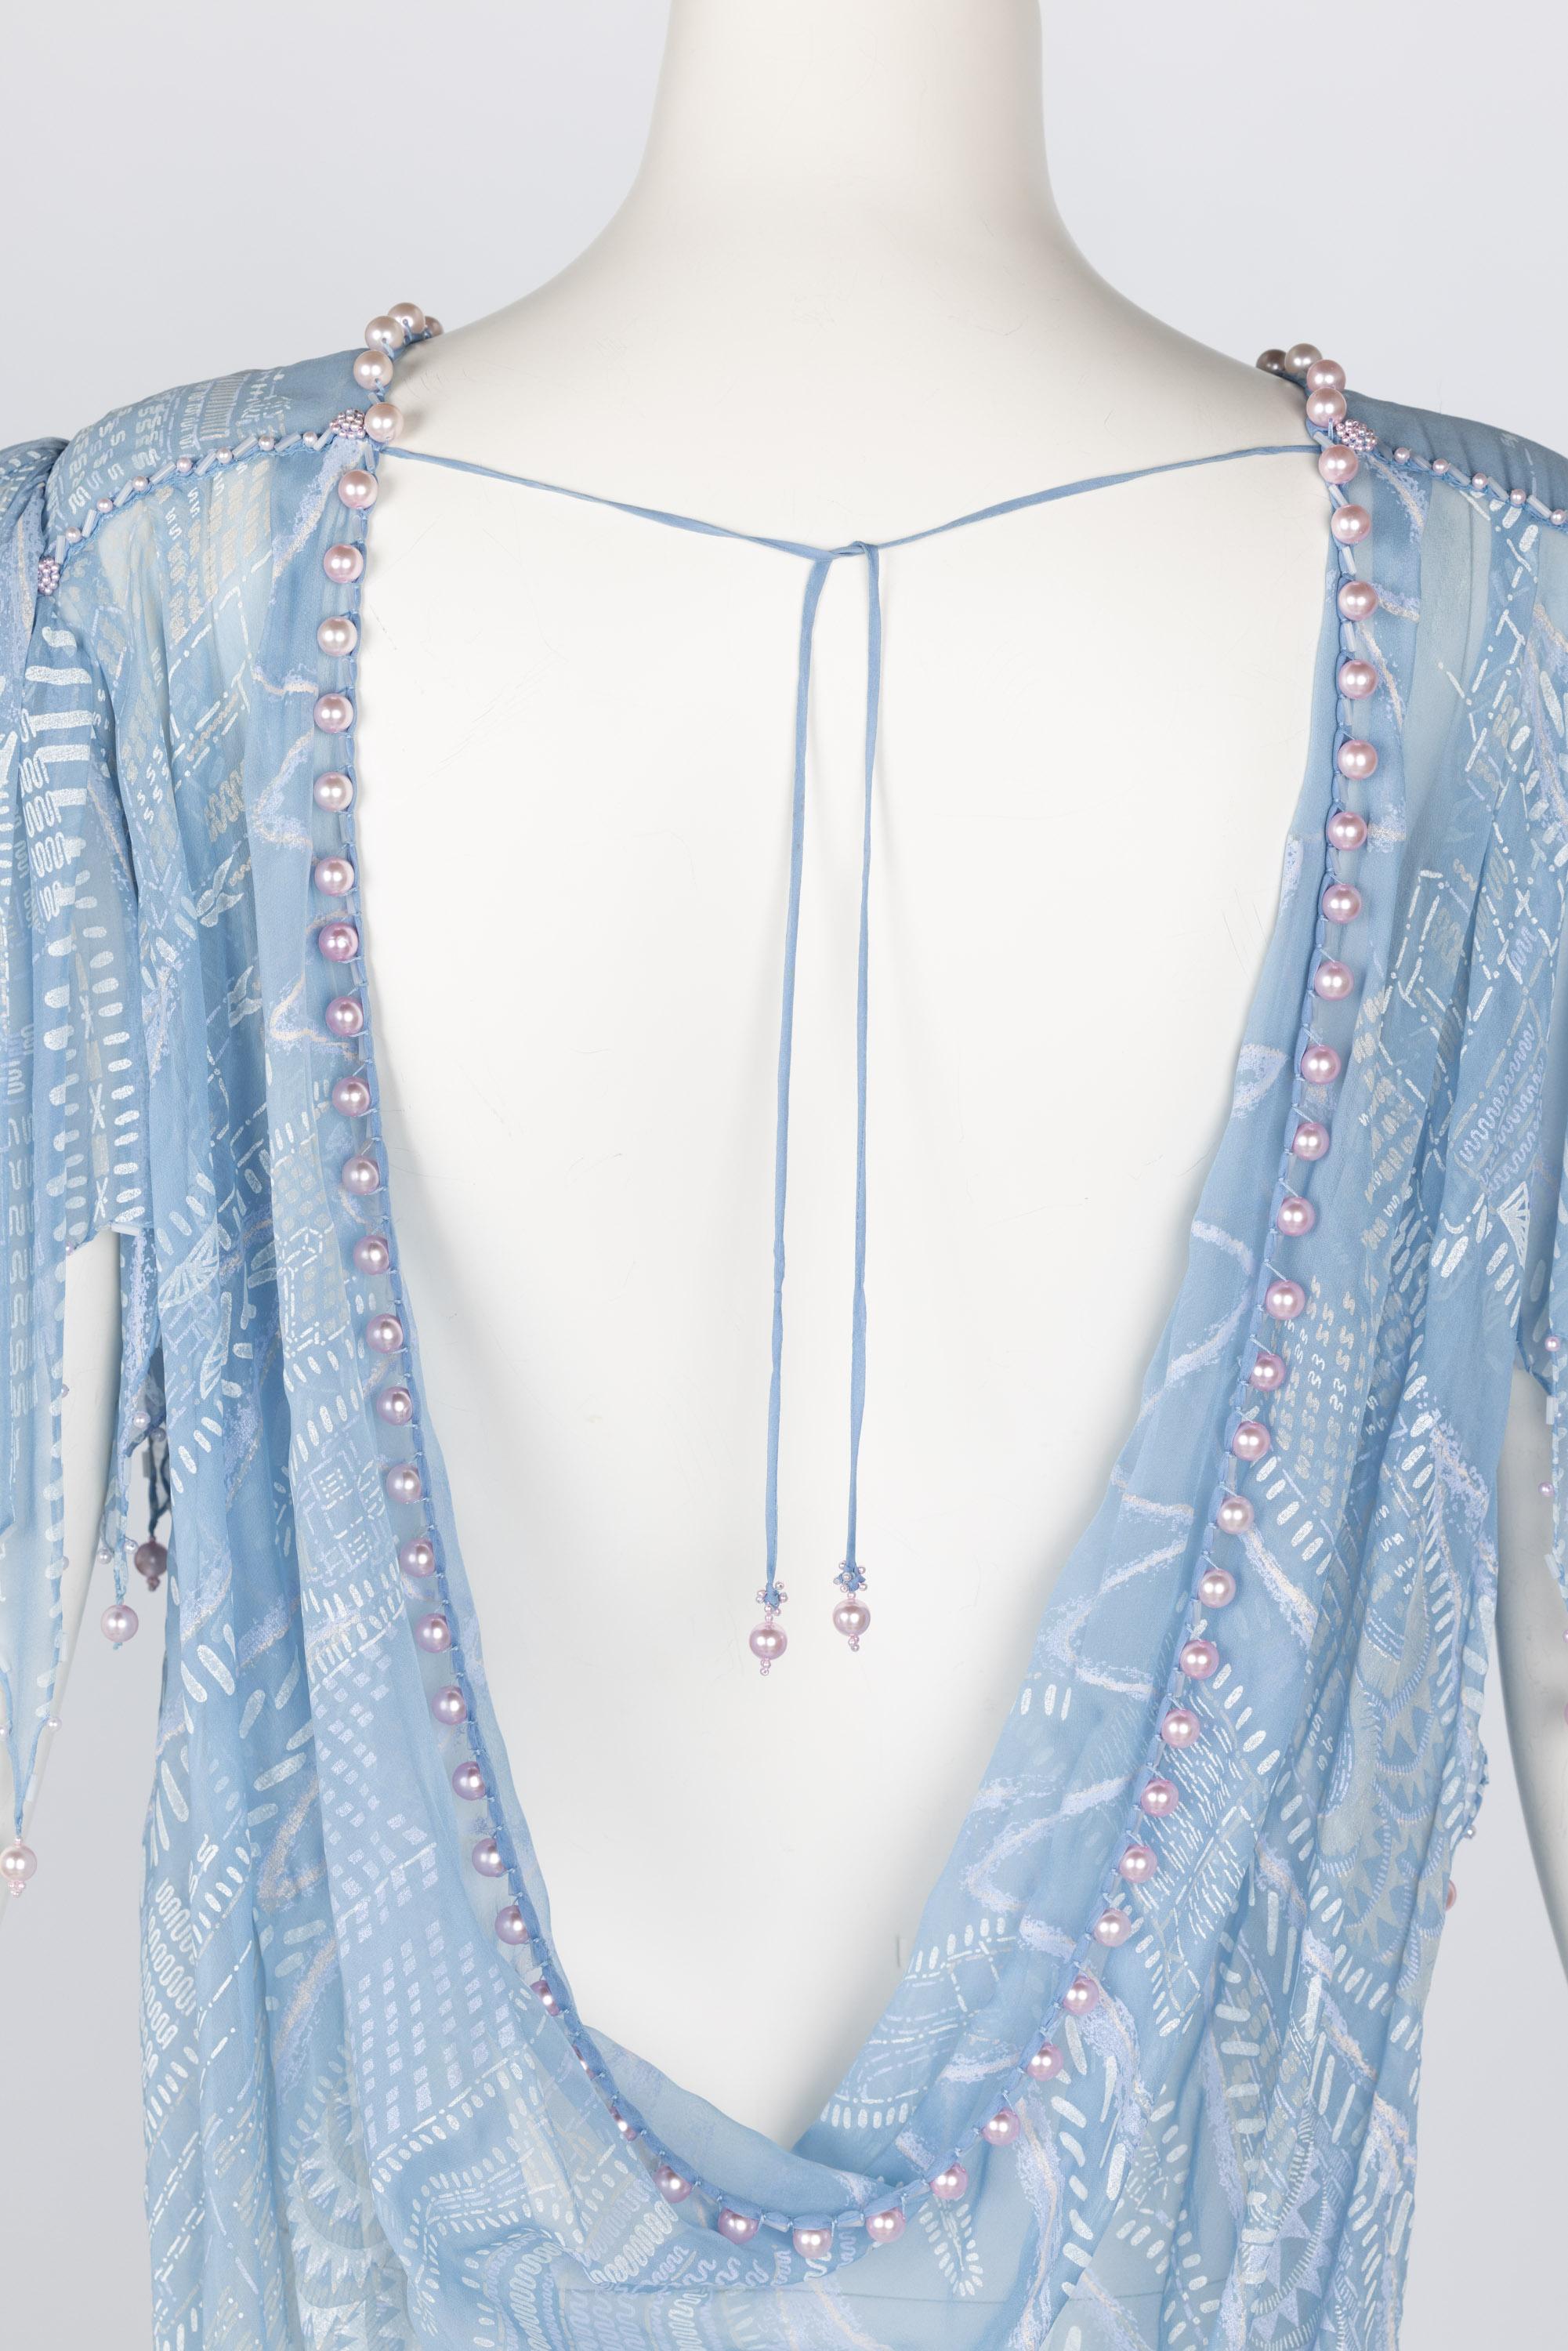 Zandra Rhodes Hellblaues, handbedrucktes, durchsichtiges, perlenbesetztes Seidenkleid mit Perlen, Museumsstück 5